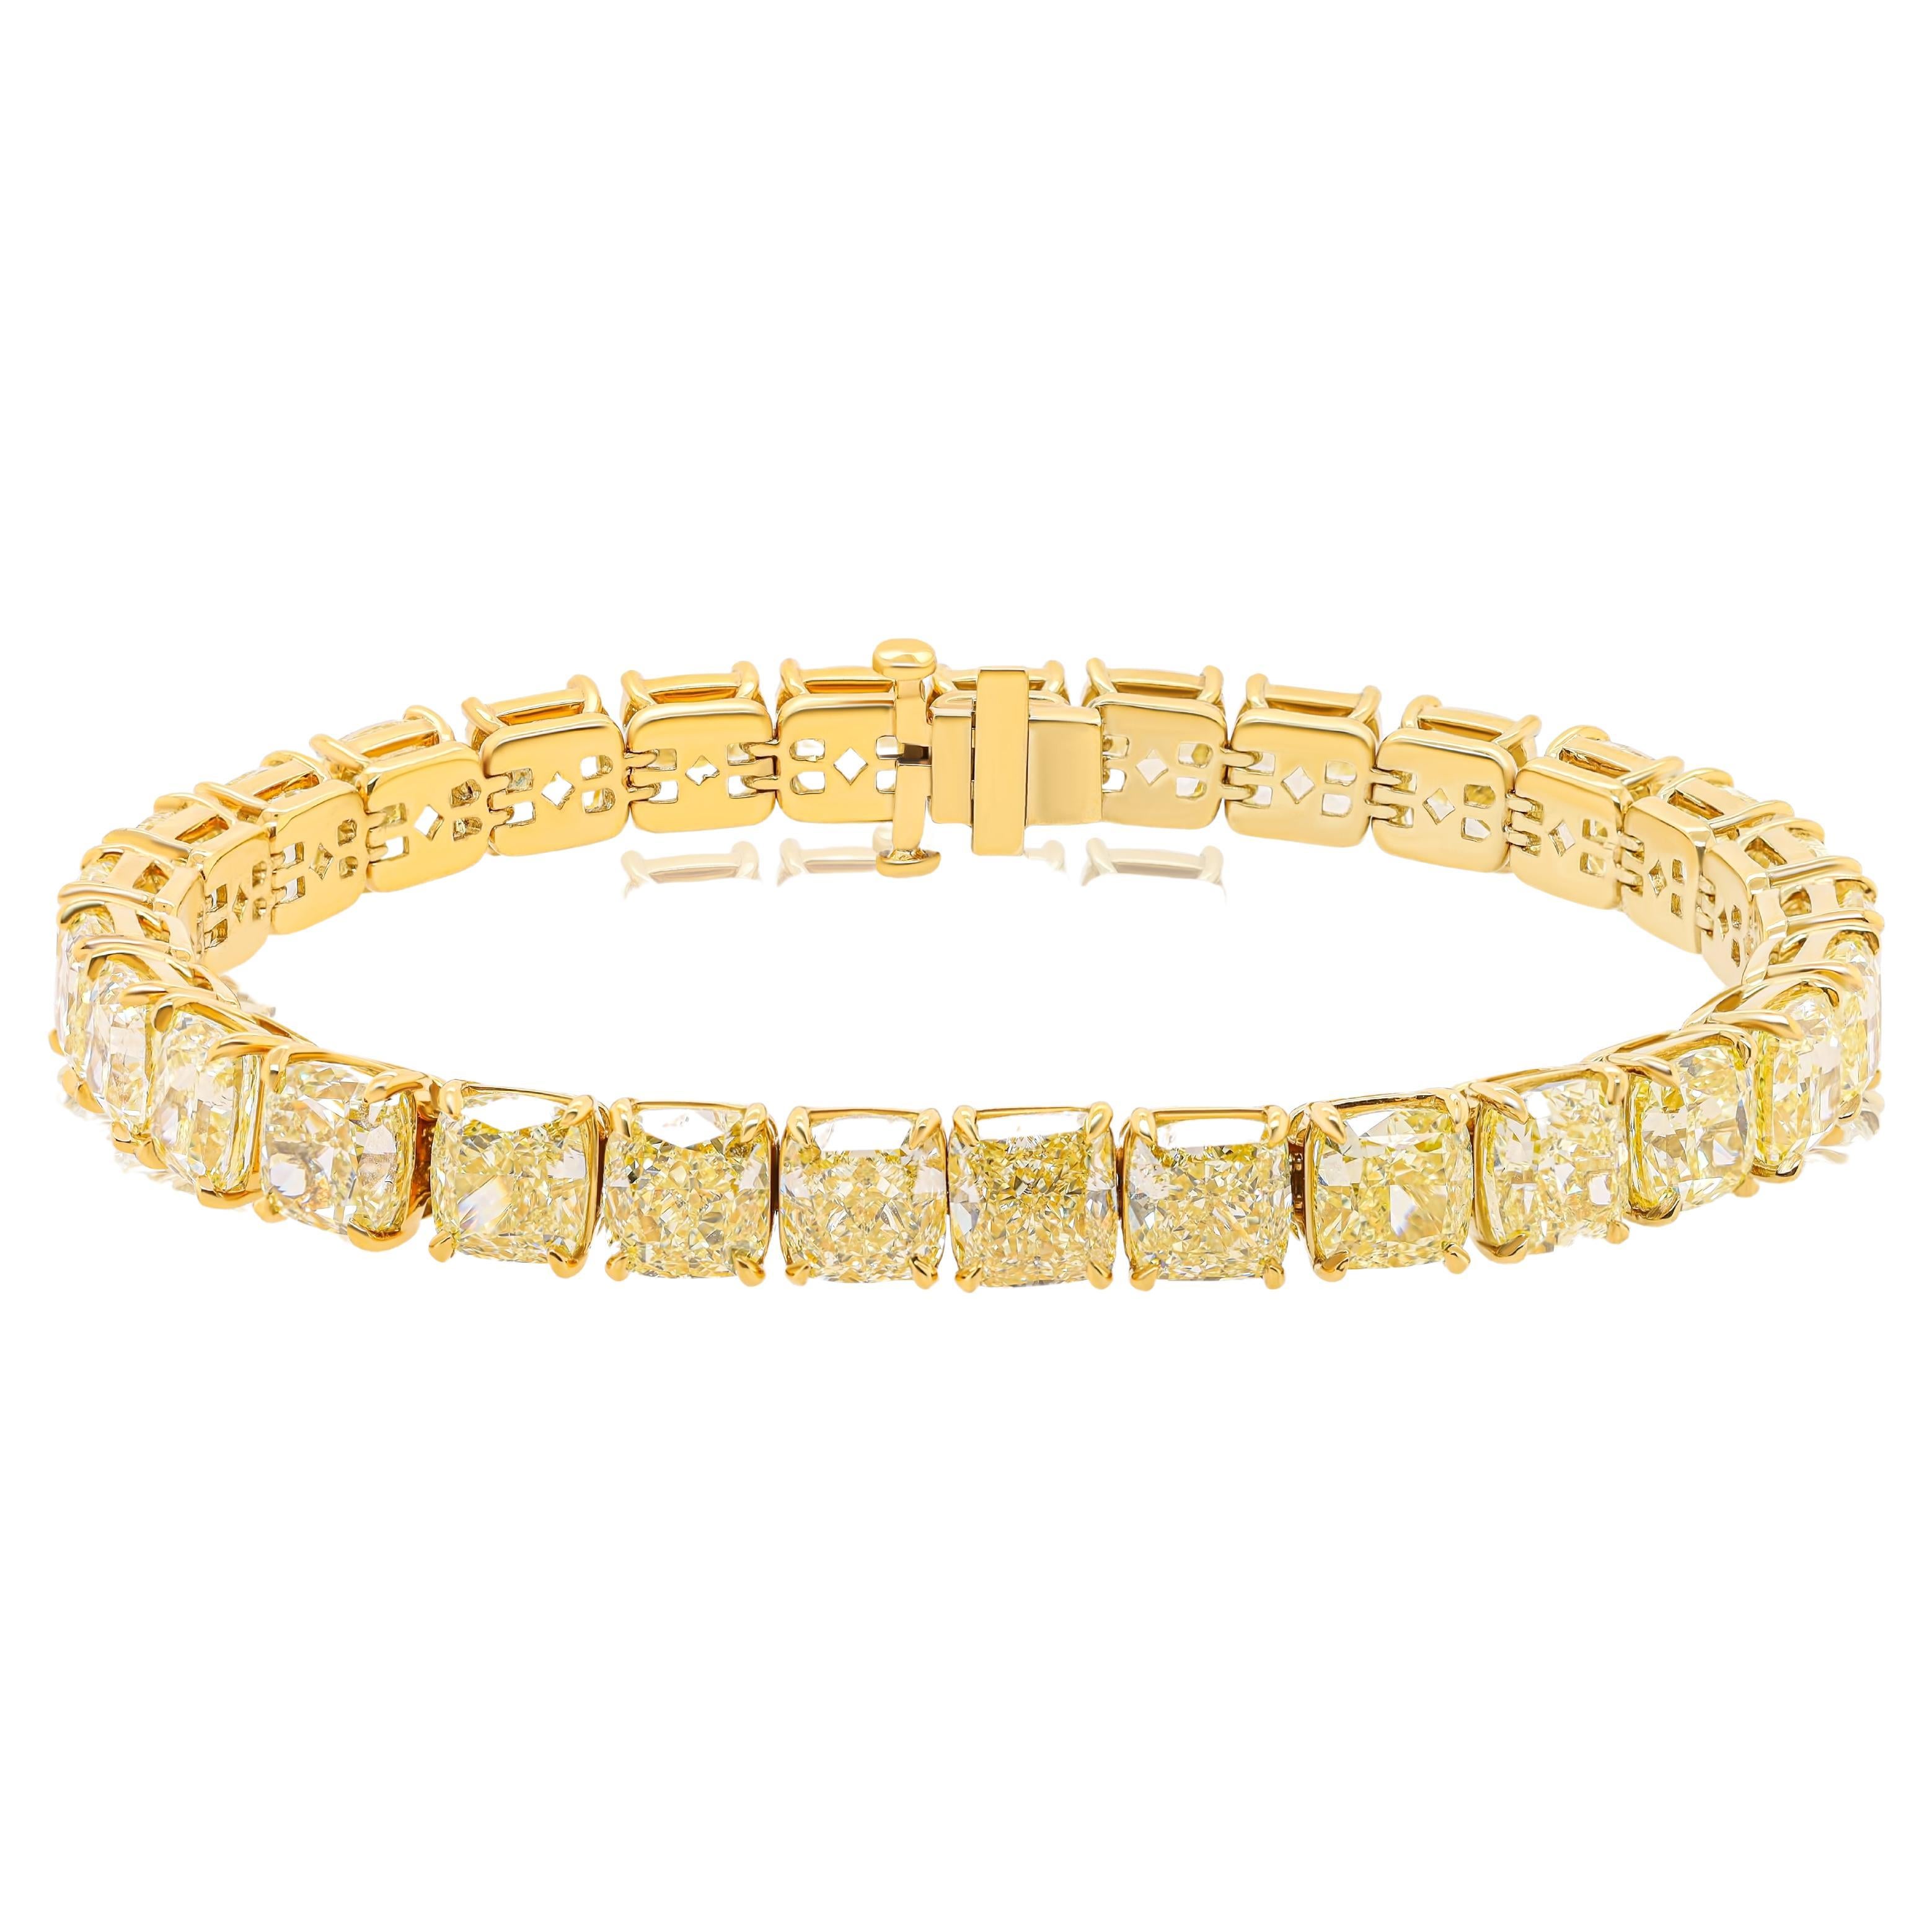 Diana M. 18 kt Yellow Diamond  Bracelet with 35.07ct Fancy Yellow Diamonds 